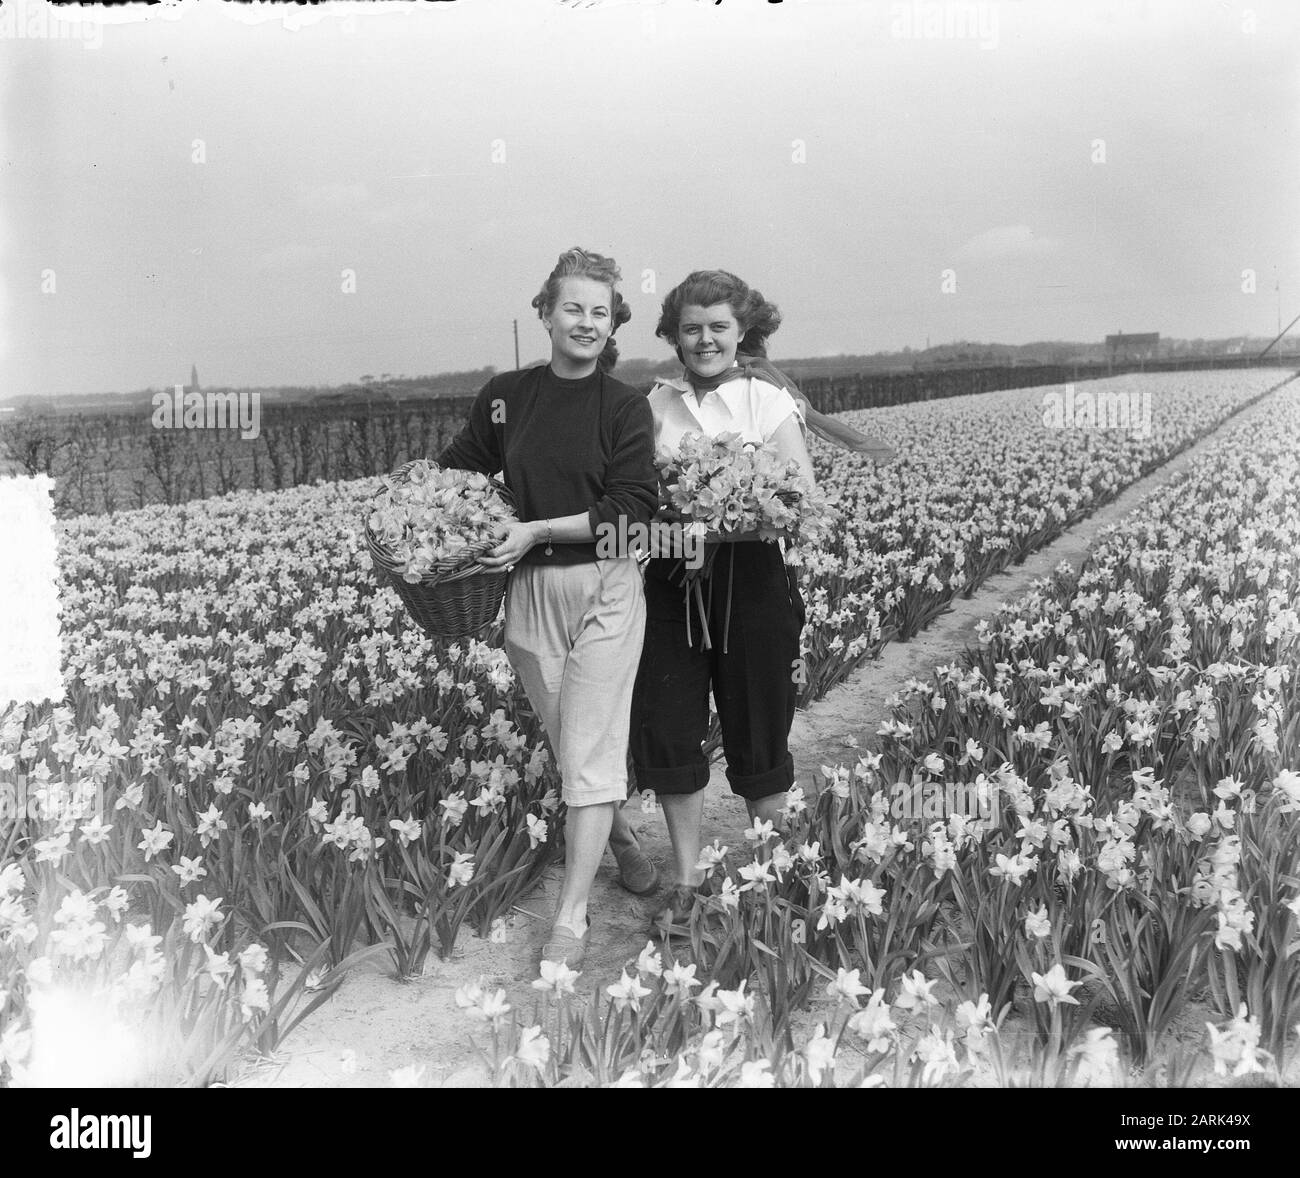 Frühlingsbilder Mädchen auf Daffodil Field Datum: 2. April 1953 Schlagwörter: Mädchen, Frühlingsbilder Personenname: Narzissen Stockfoto